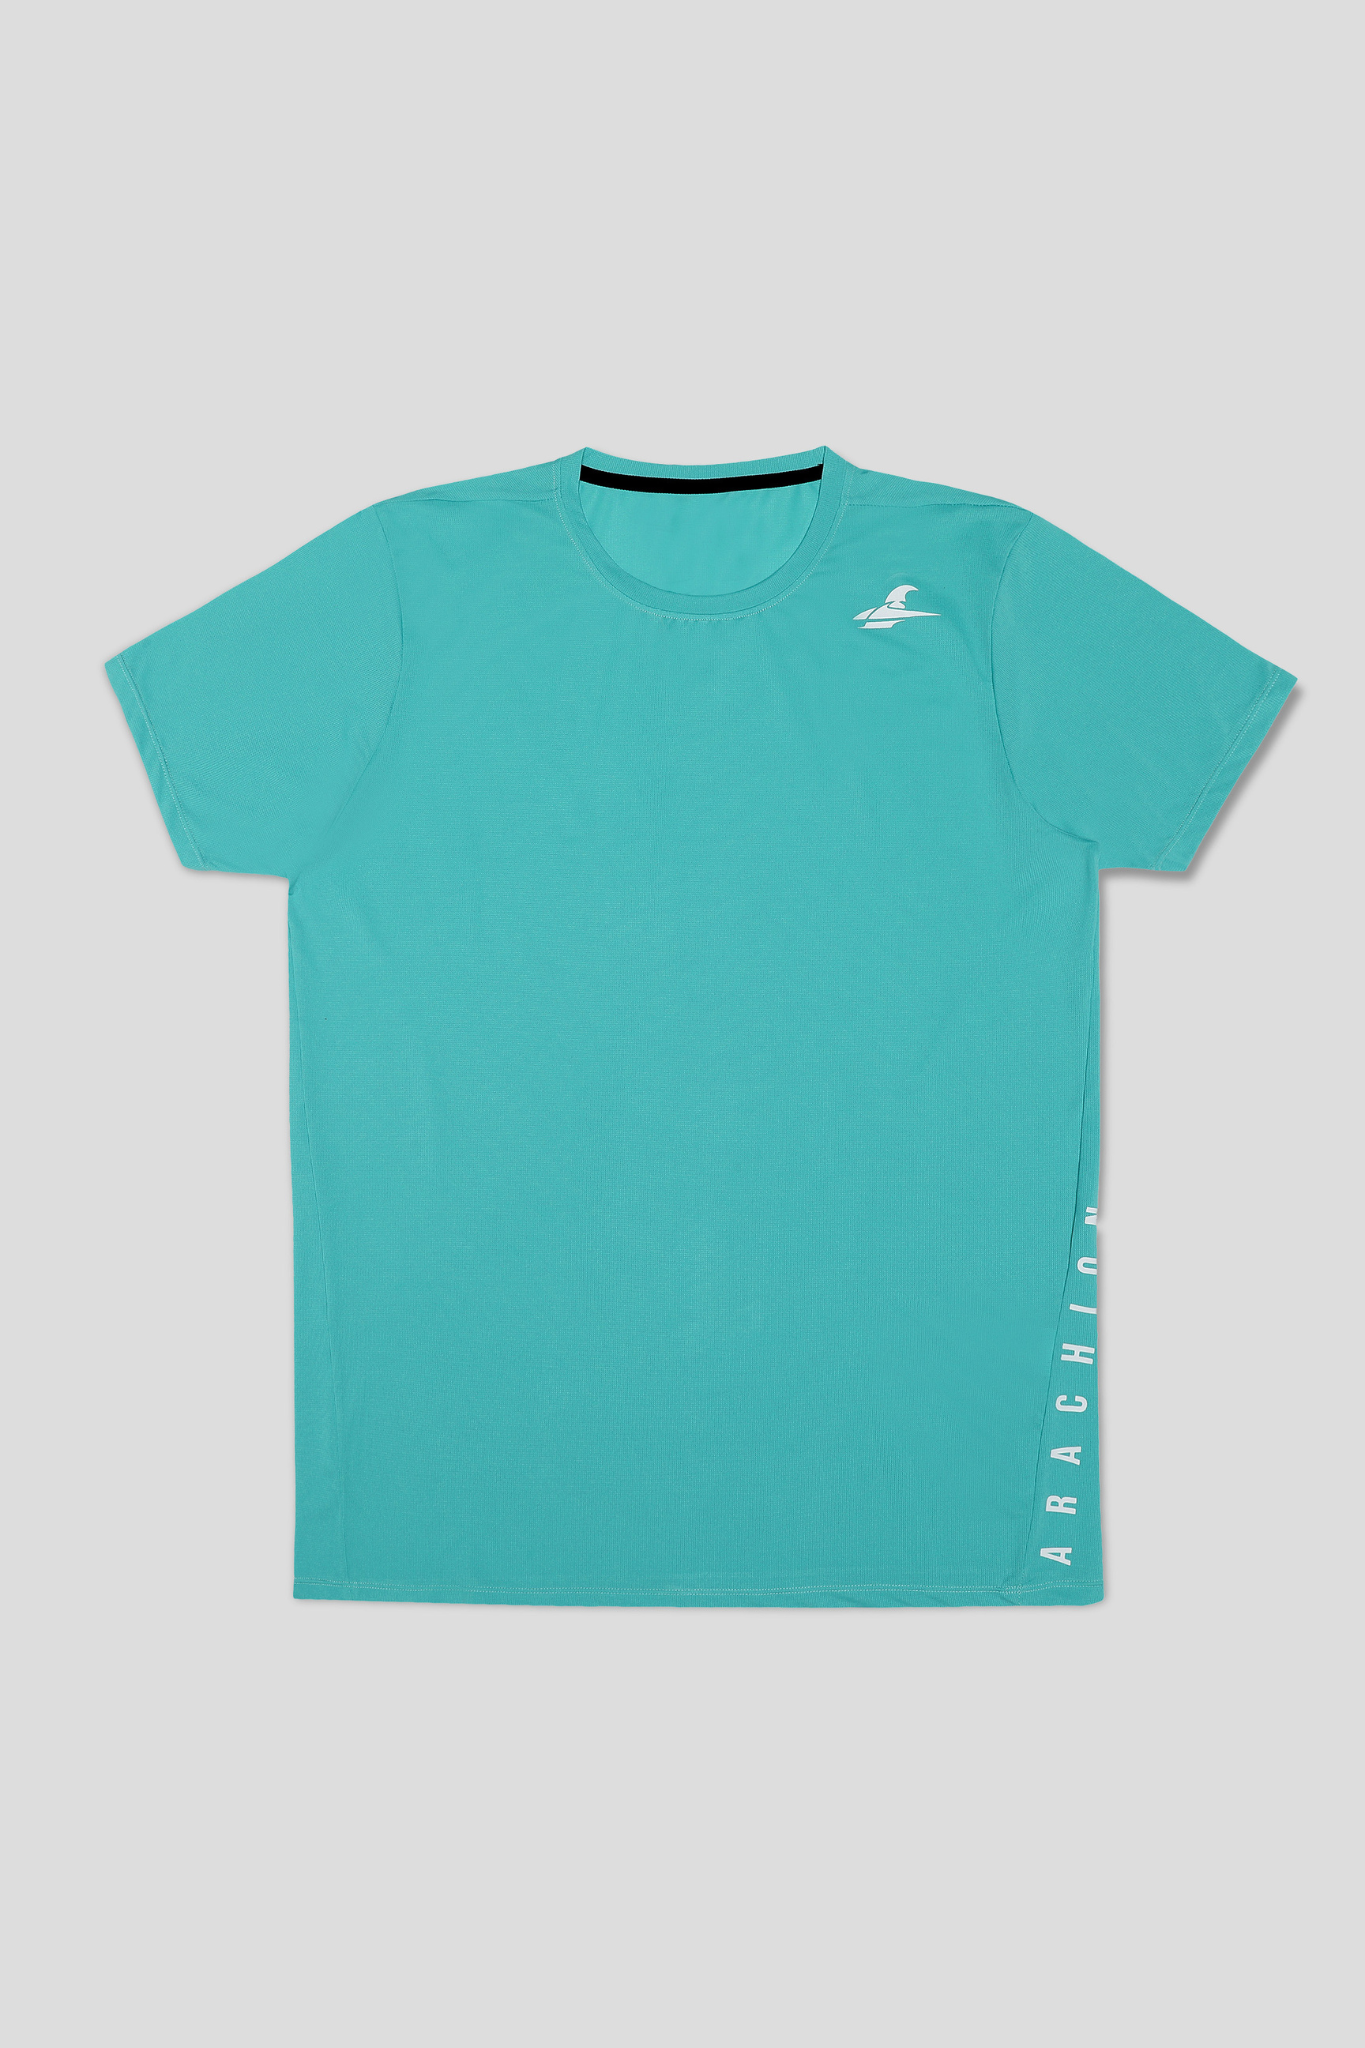 Arachion Triumph T-shirt | Aquamarine Green